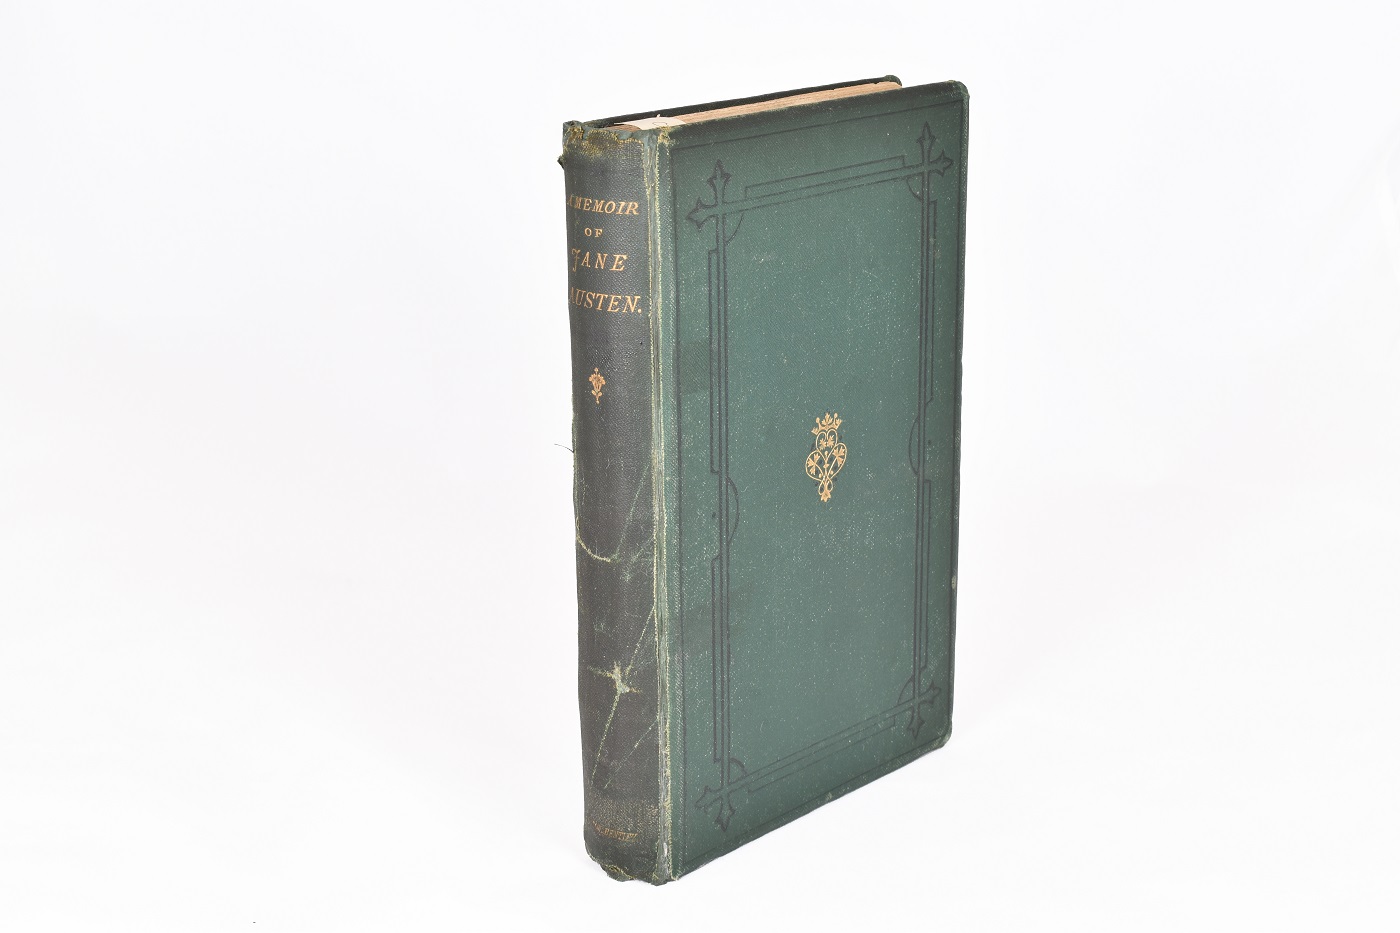 A Memoir of Jane Austen, showing green cover